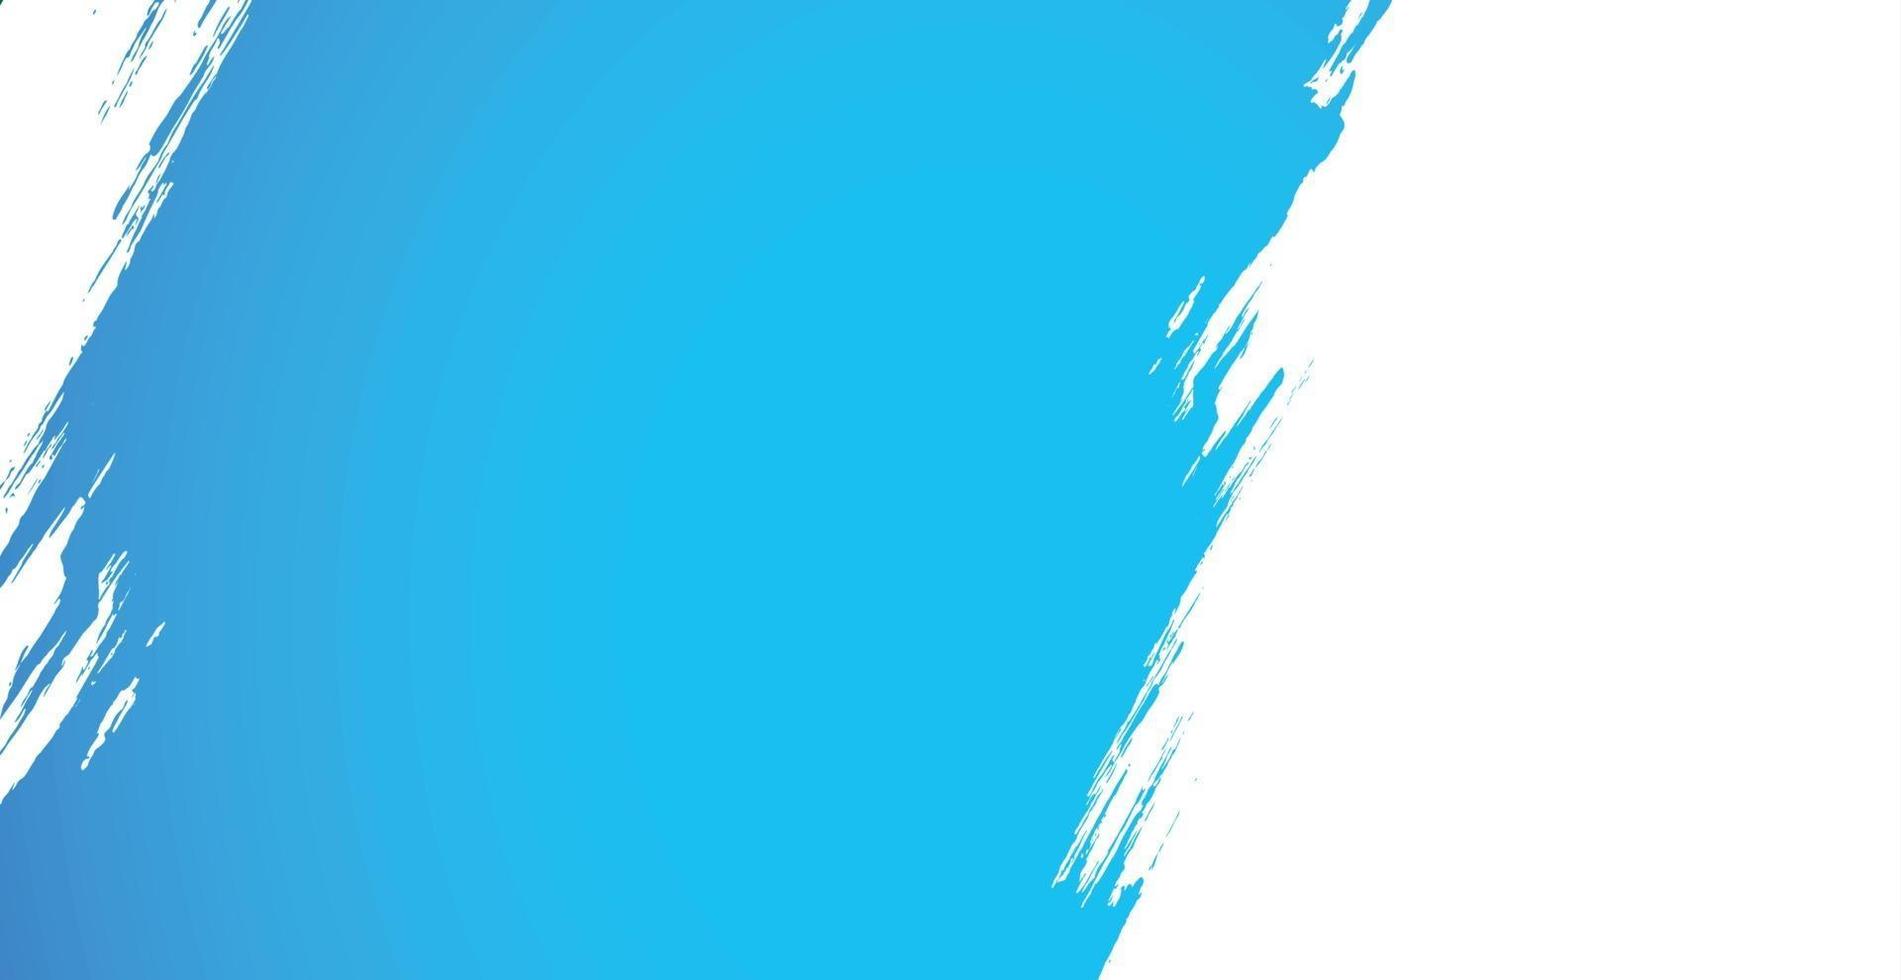 mancha realista de pintura azul sobre fondo blanco - vector